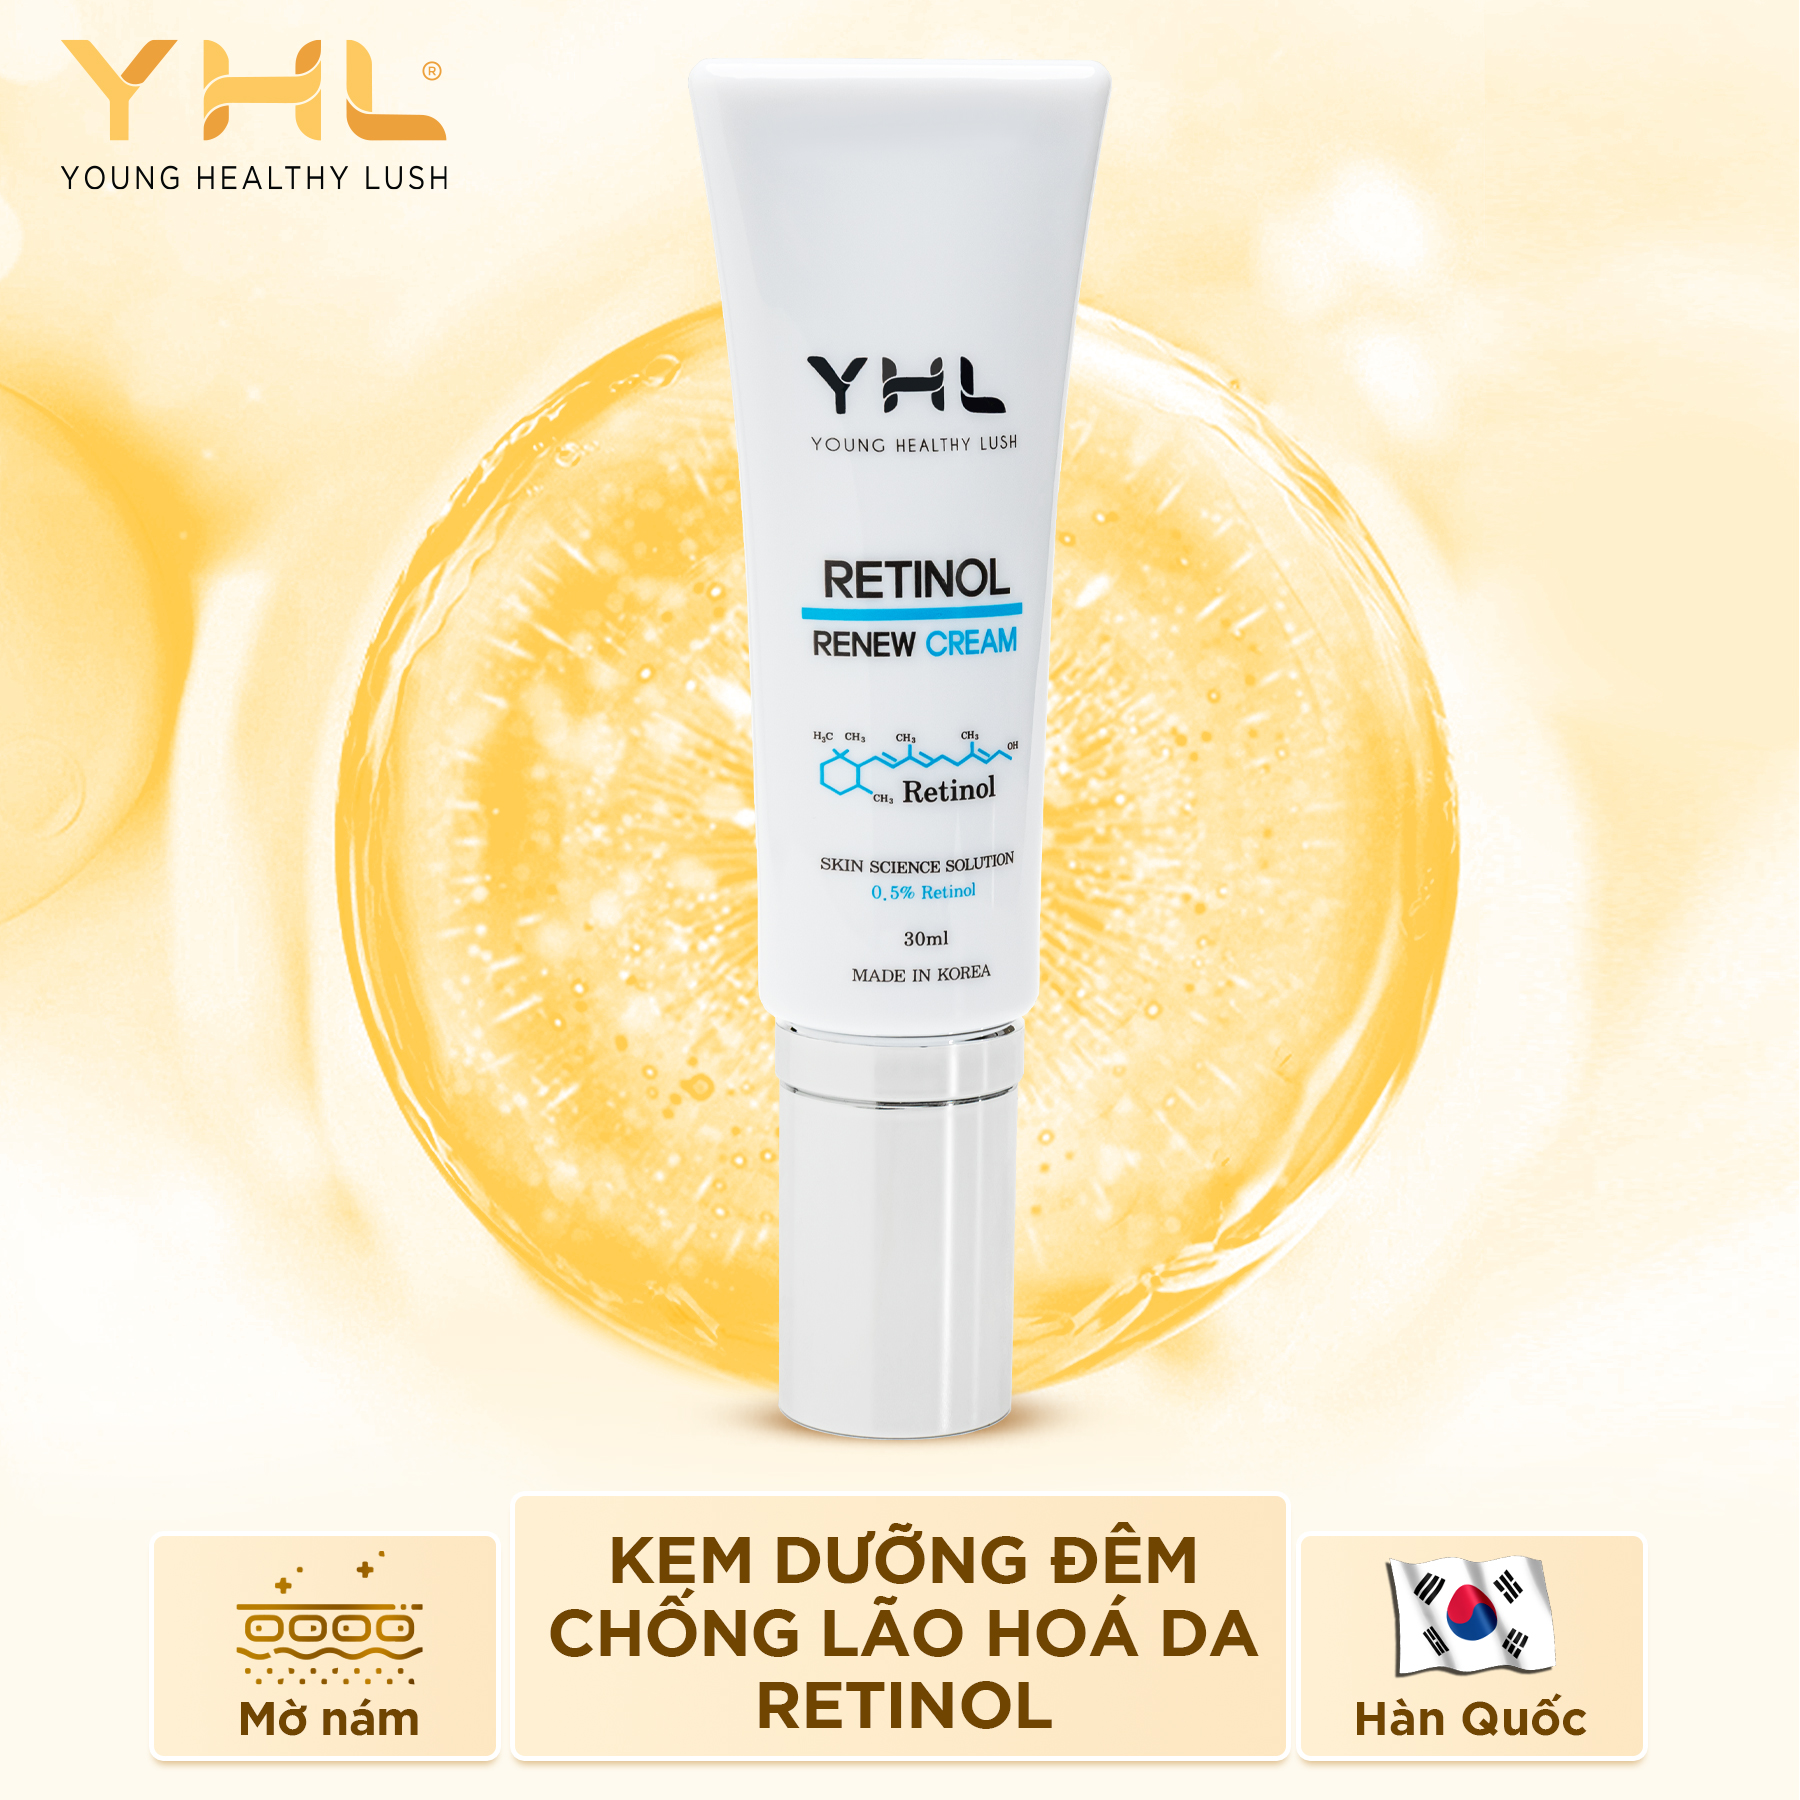 Kem dưỡng Retinol YHL Hàn Quốc 30ml chống lão hóa dưỡng ẩm chống nhăn da và giảm thâm nám đồi mồi trên da - Ban đêm